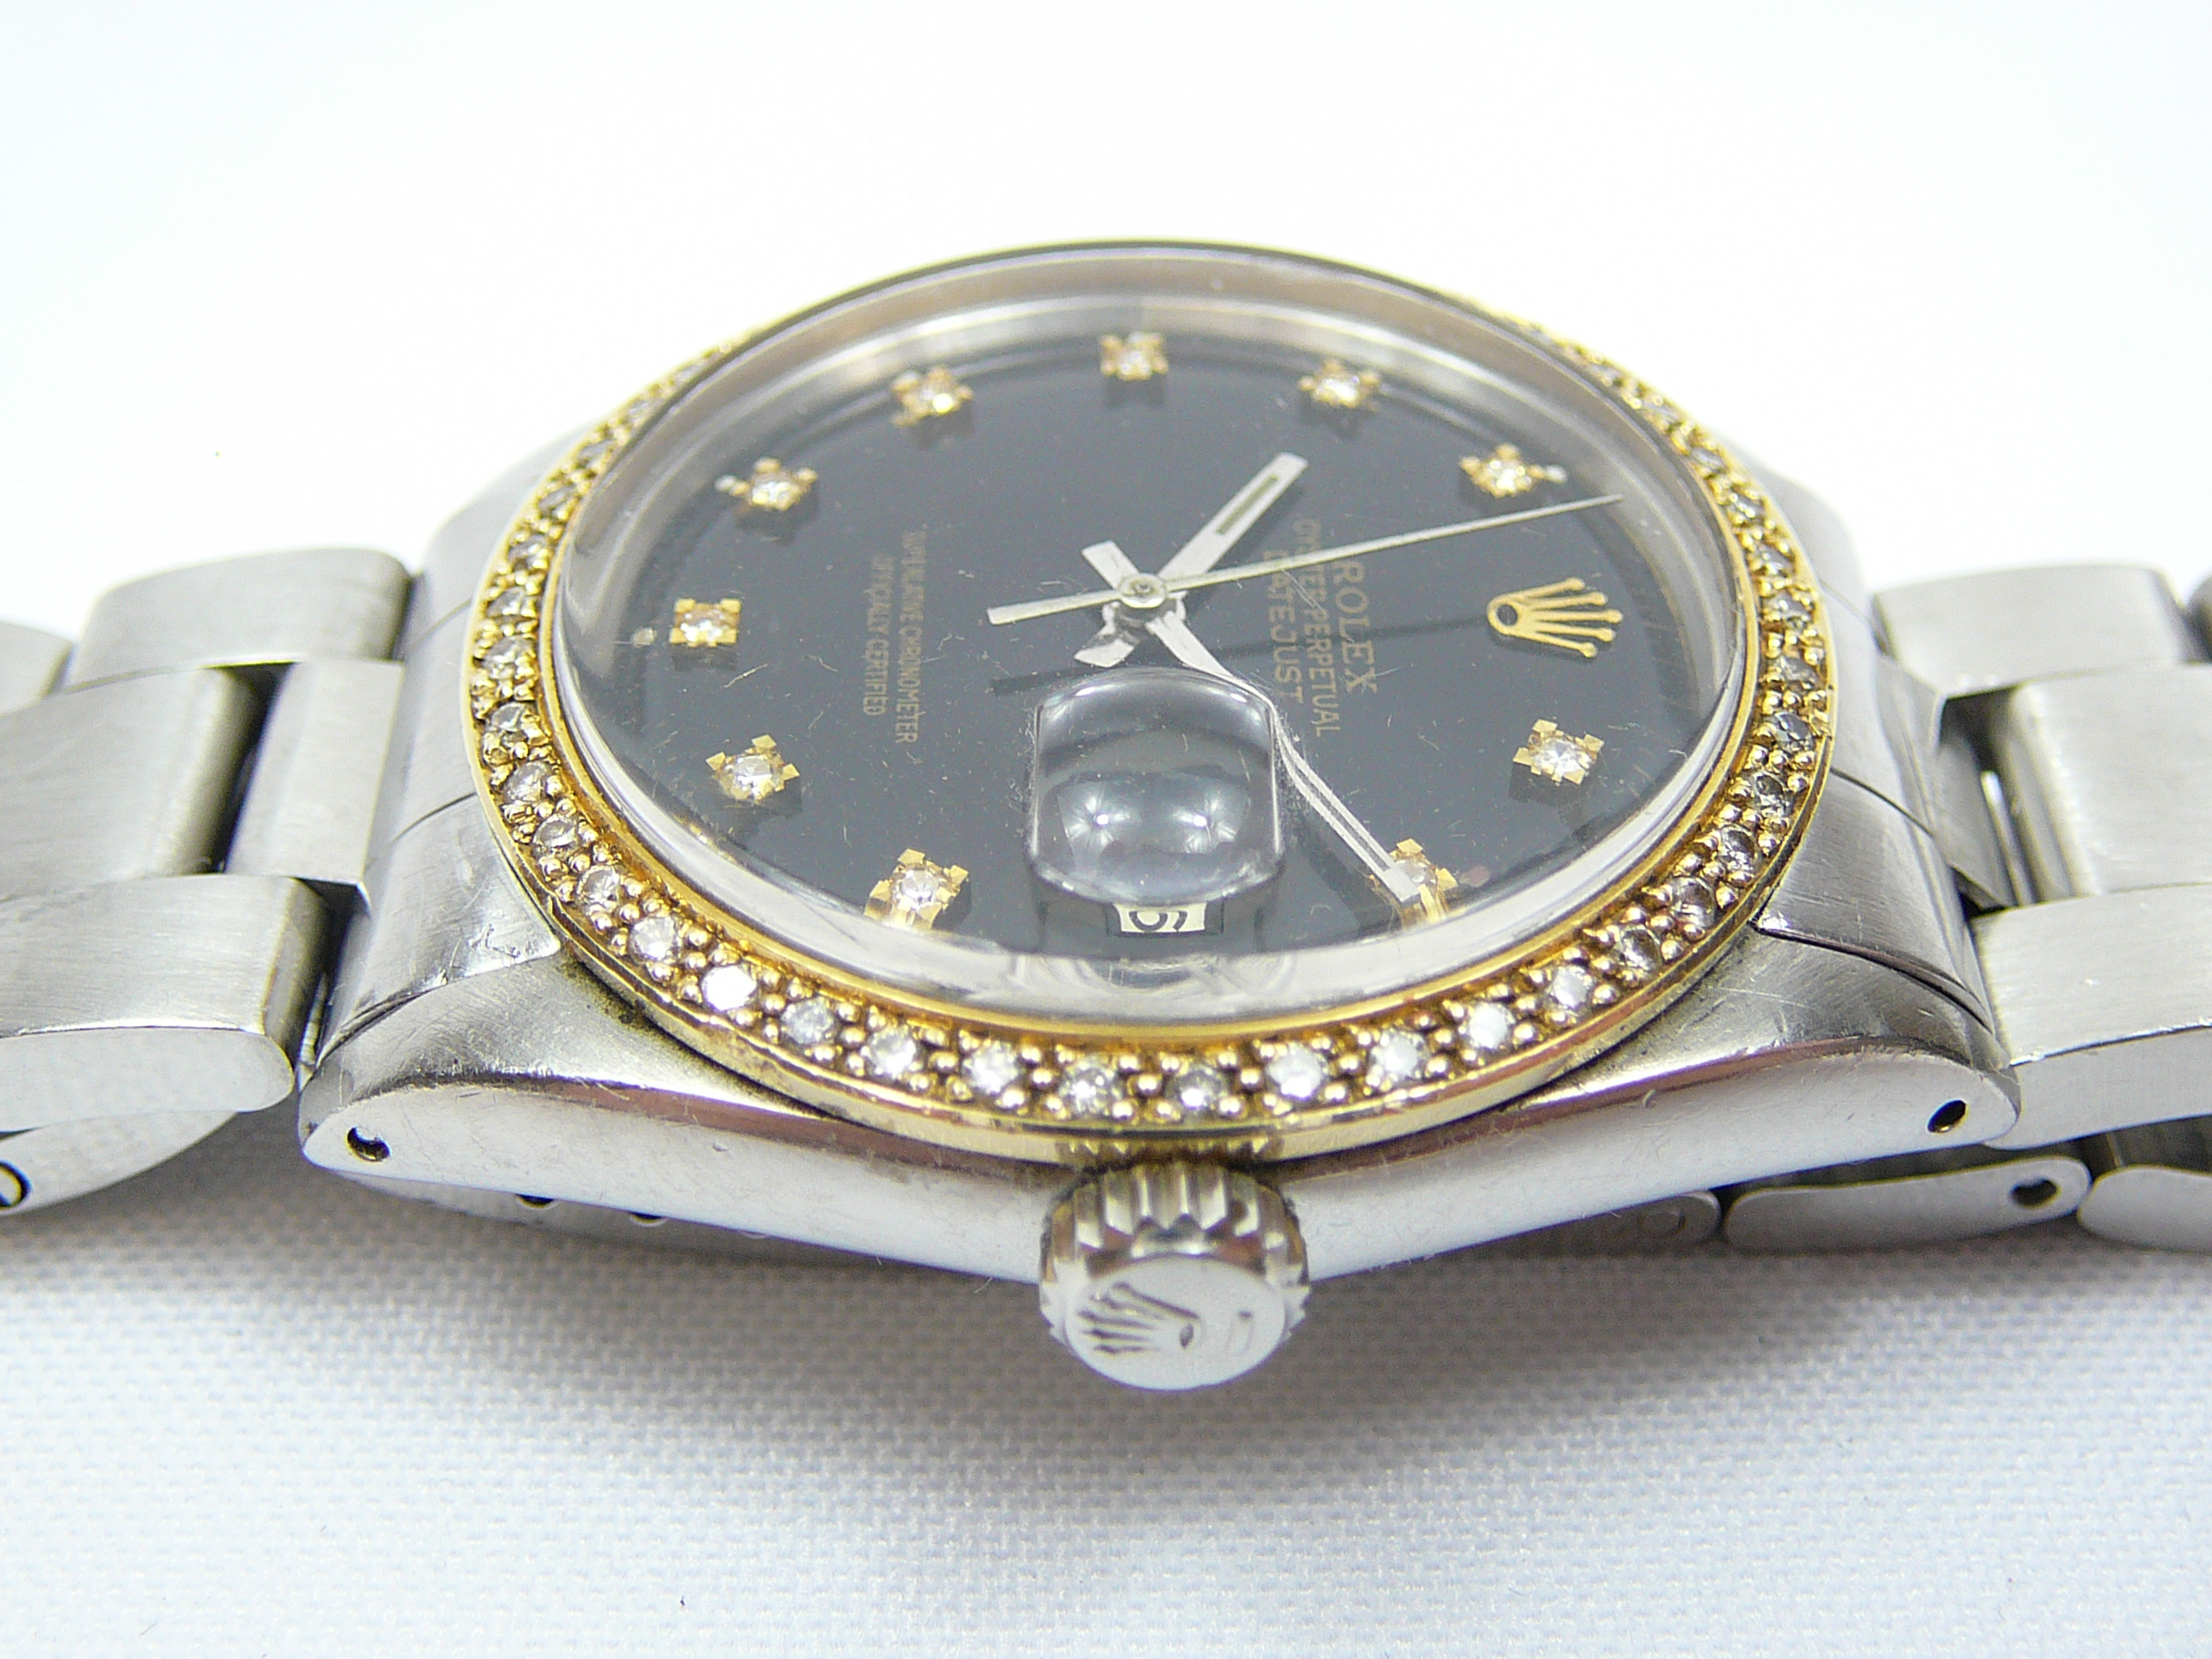 Gents Rolex Wrist Watch - Image 4 of 6